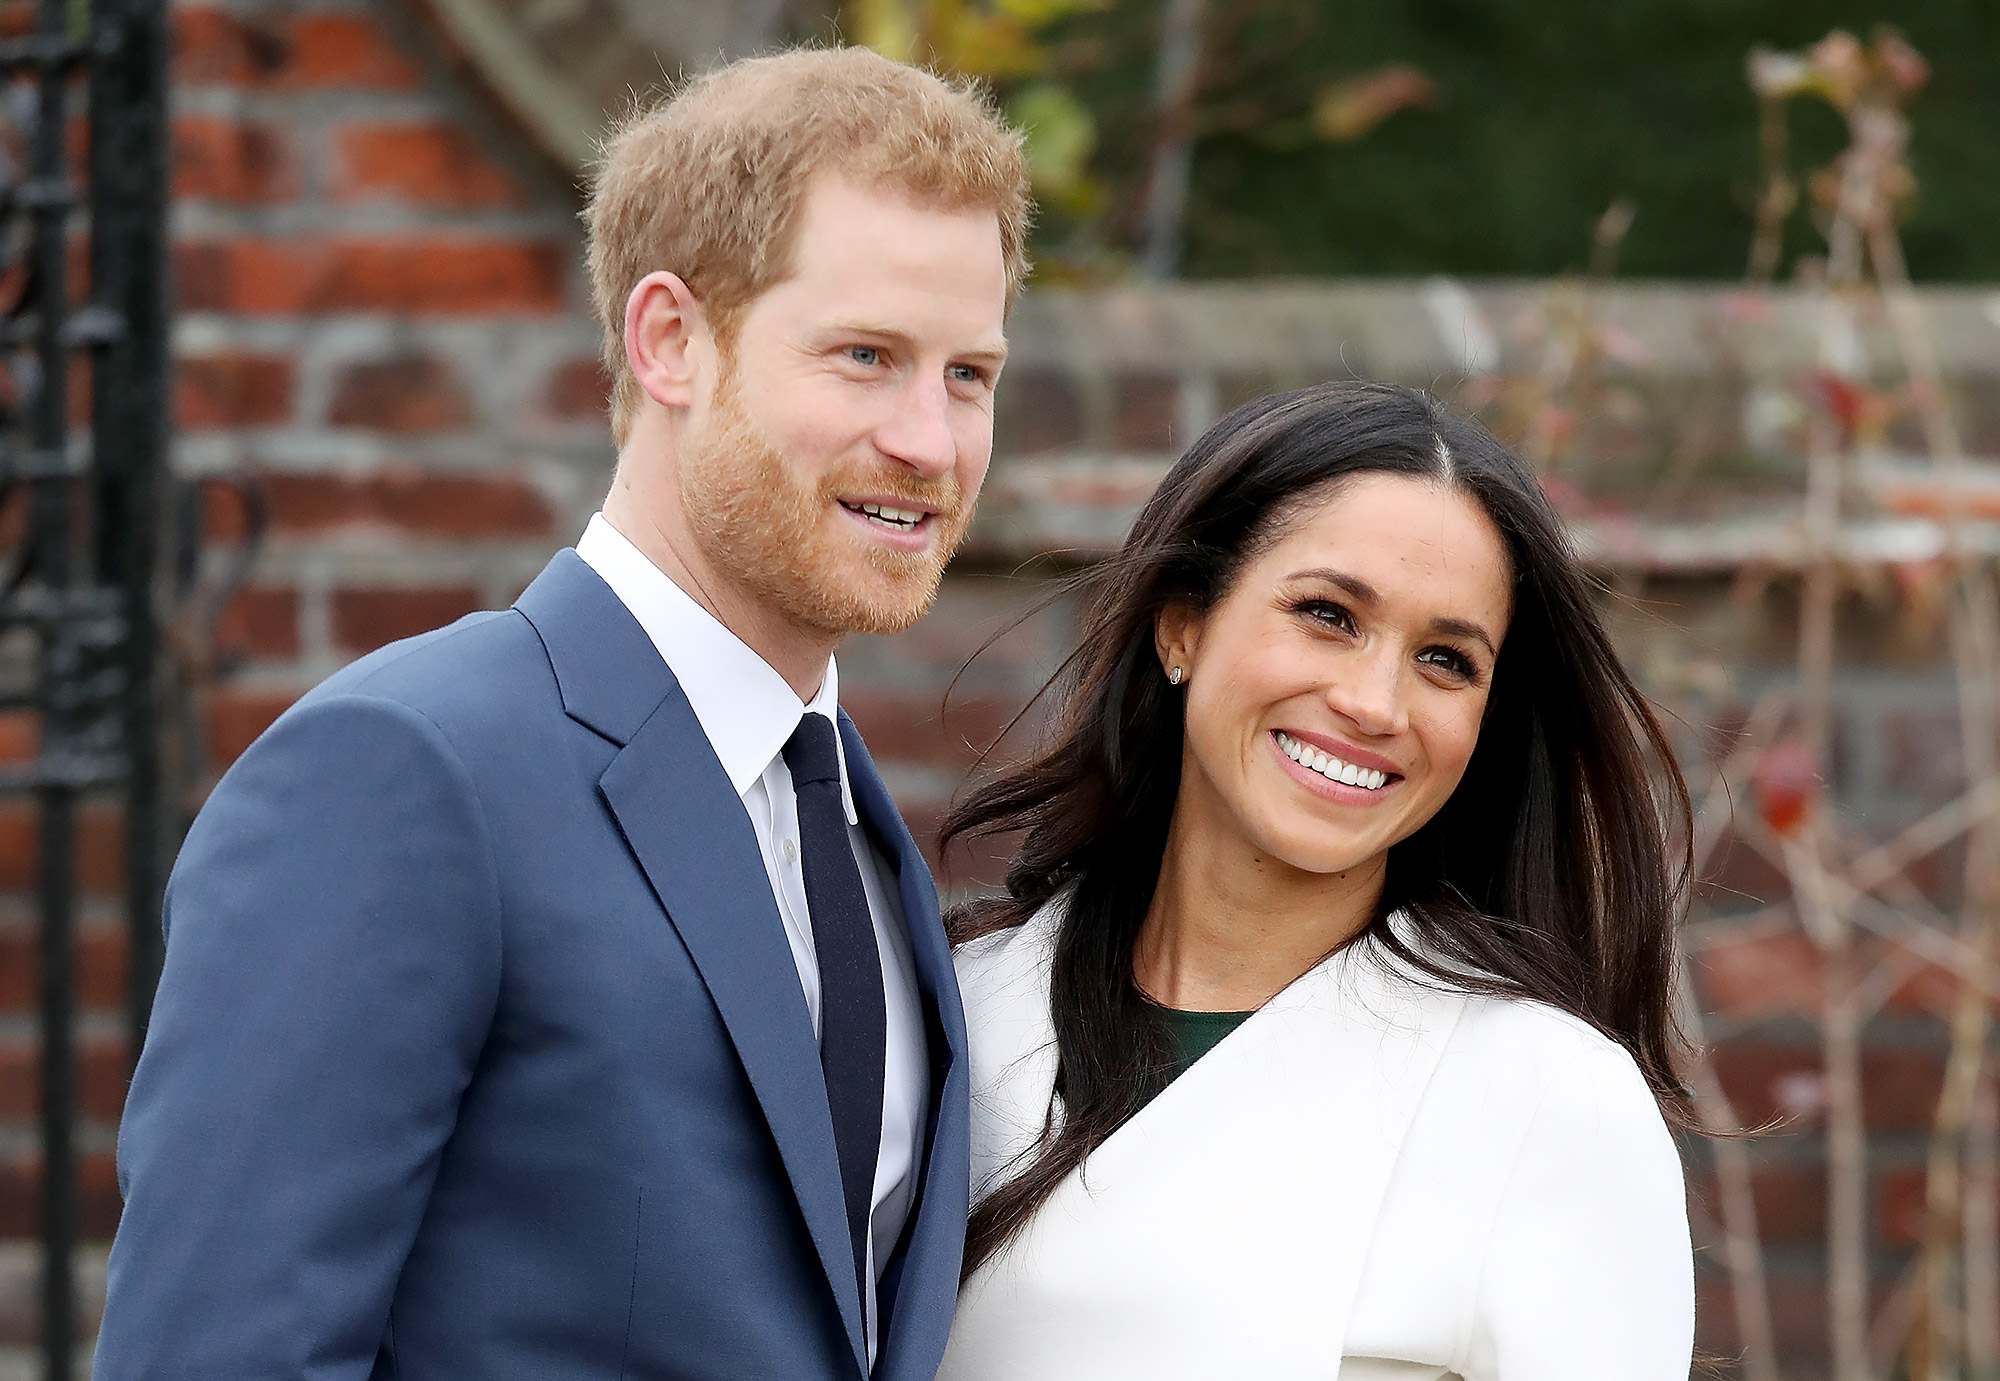 Πρίγκιπας Harry & Meghan Markle: Ο έρωτας τους γίνεται τηλεταινία To μίνι φιλμ της εταιρίας Lifetime, Harry & Meghan: The Royal Love Story, θα προβληθεί λίγες μέρες μετά το γάμο του ζευγαριού το Μάιο.